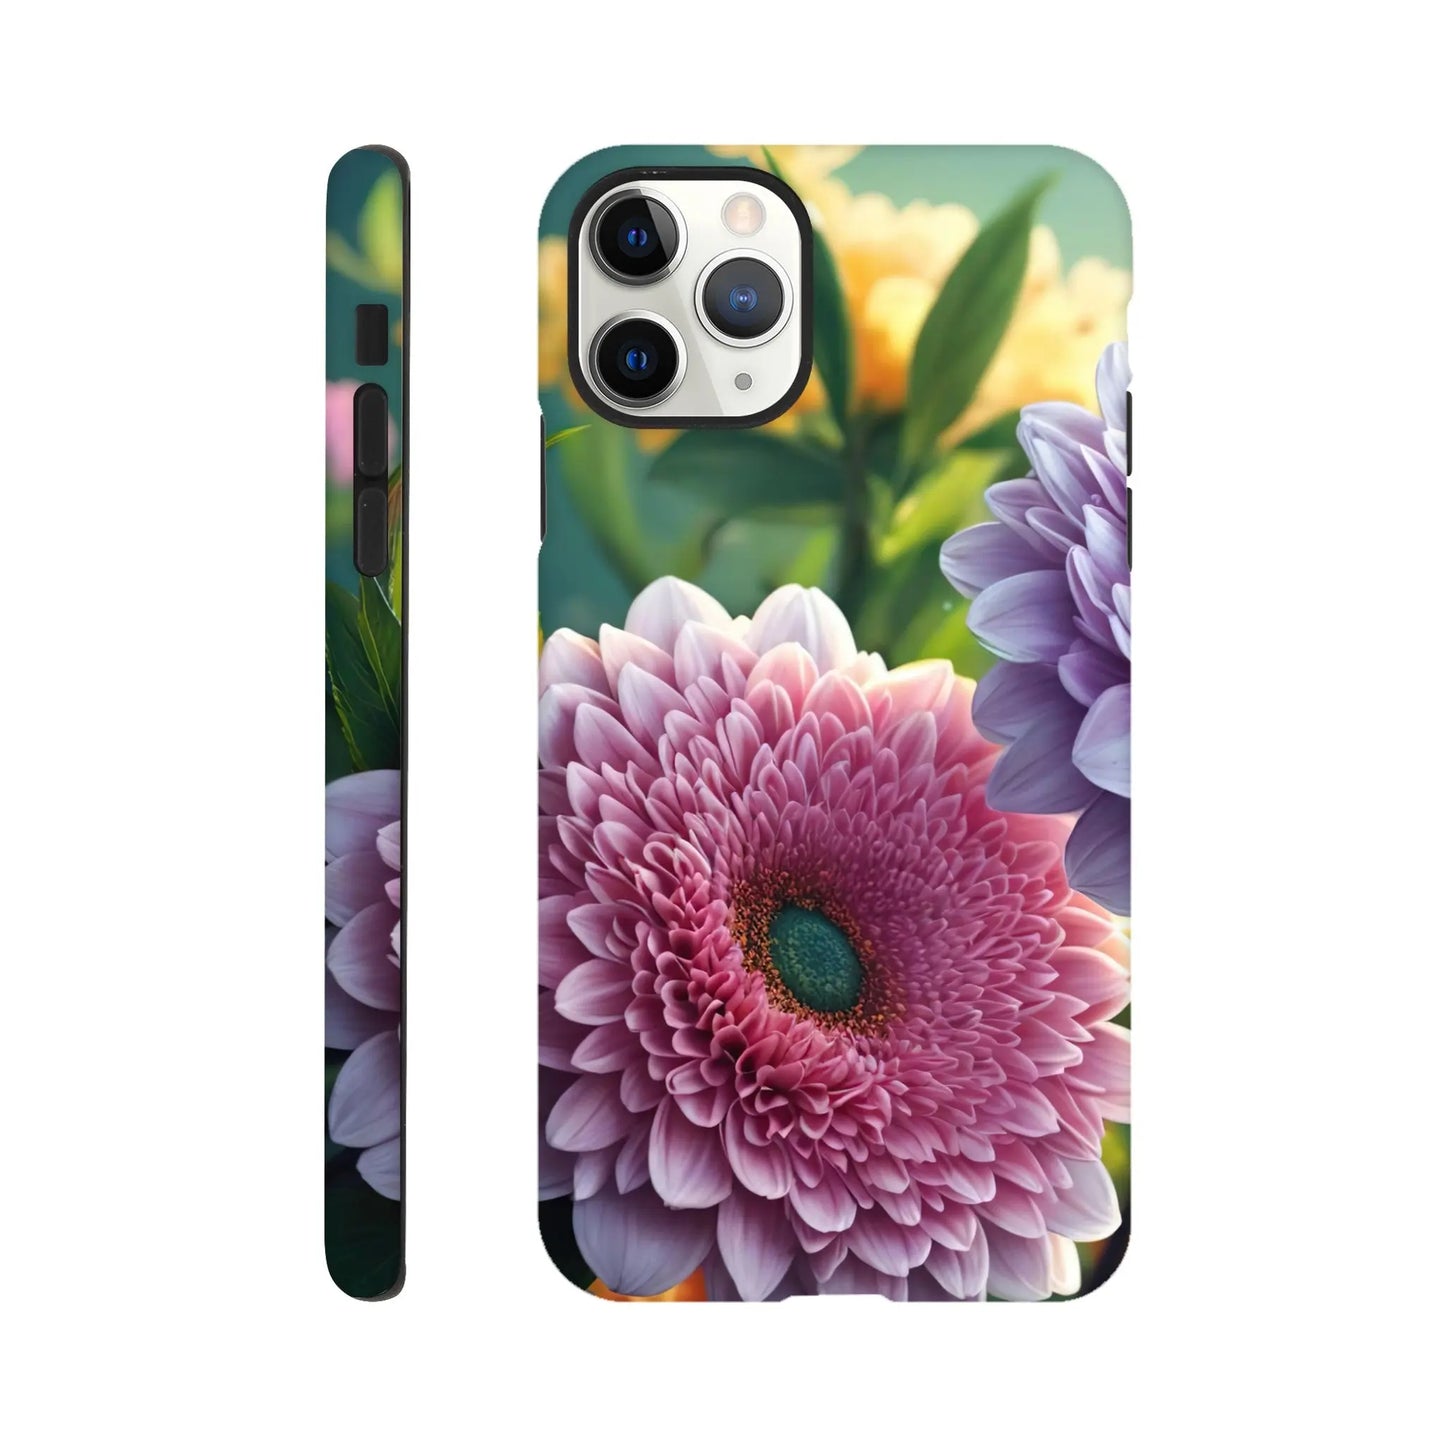 Smartphone-Hülle "Hart" - Blumen Vielfalt - Foto Stil, KI-Kunst, Pflanzen, iPhone-11-Pro-Max - RolConArt